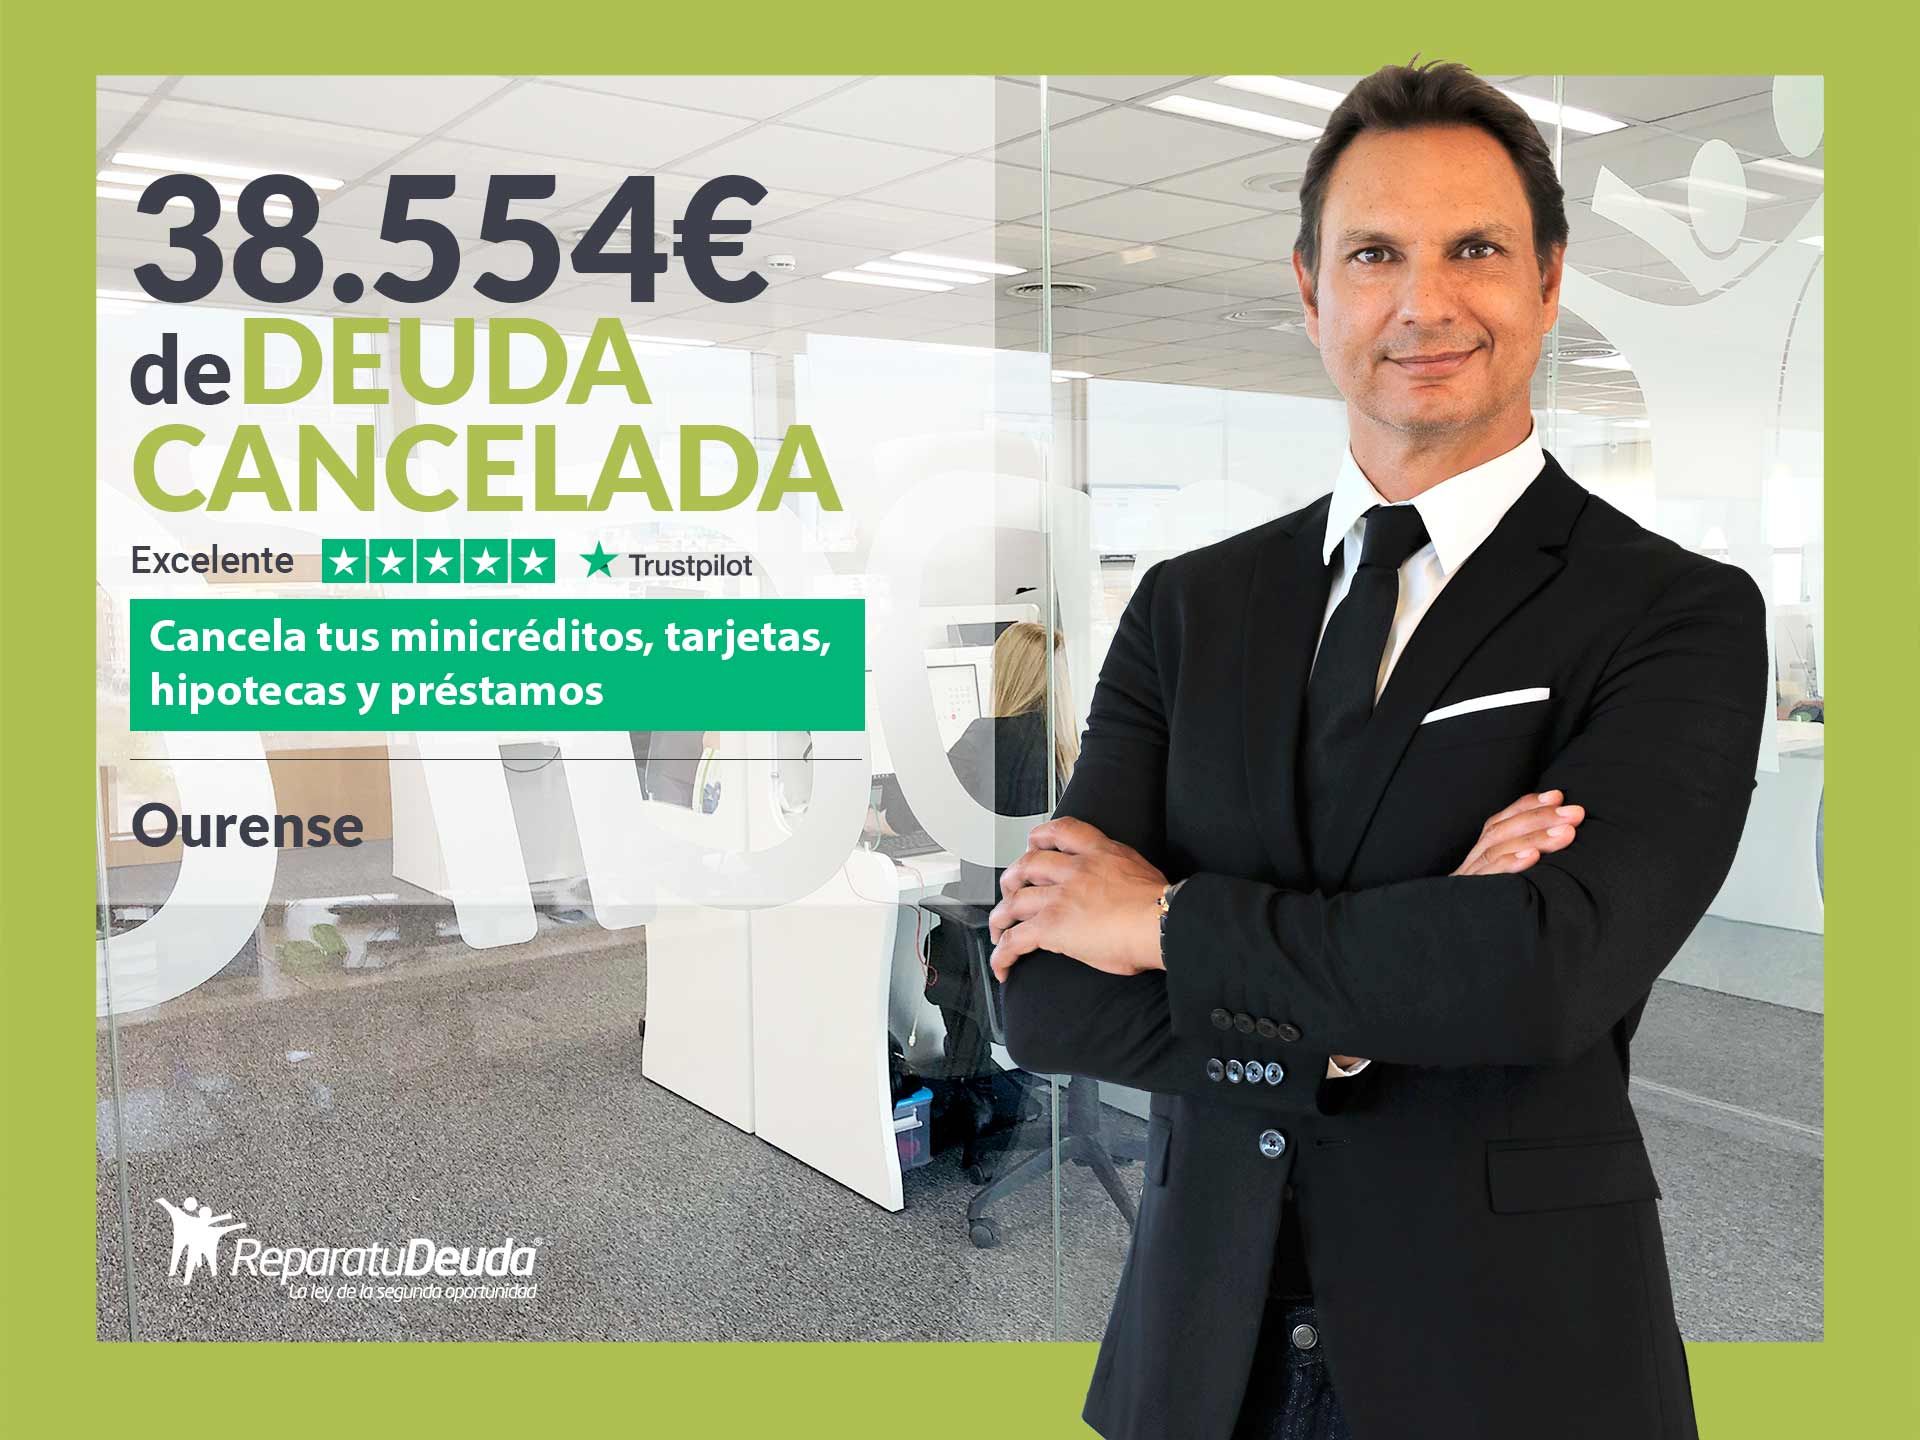 Repara tu Deuda Abogados cancela 38.554? en Ourense (Galicia) con la Ley de Segunda Oportunidad